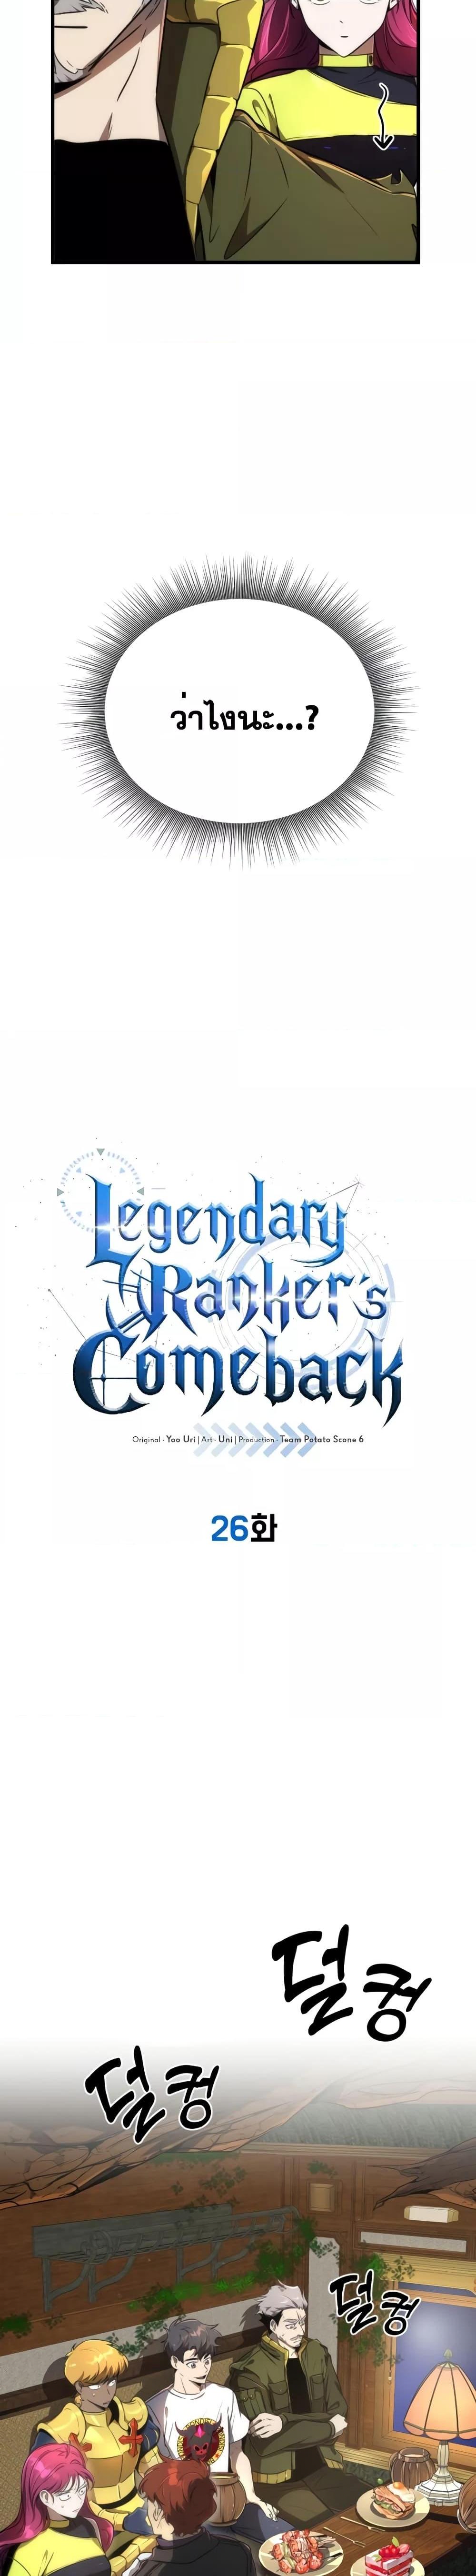 Legendary Ranker’s Comeback 26 04